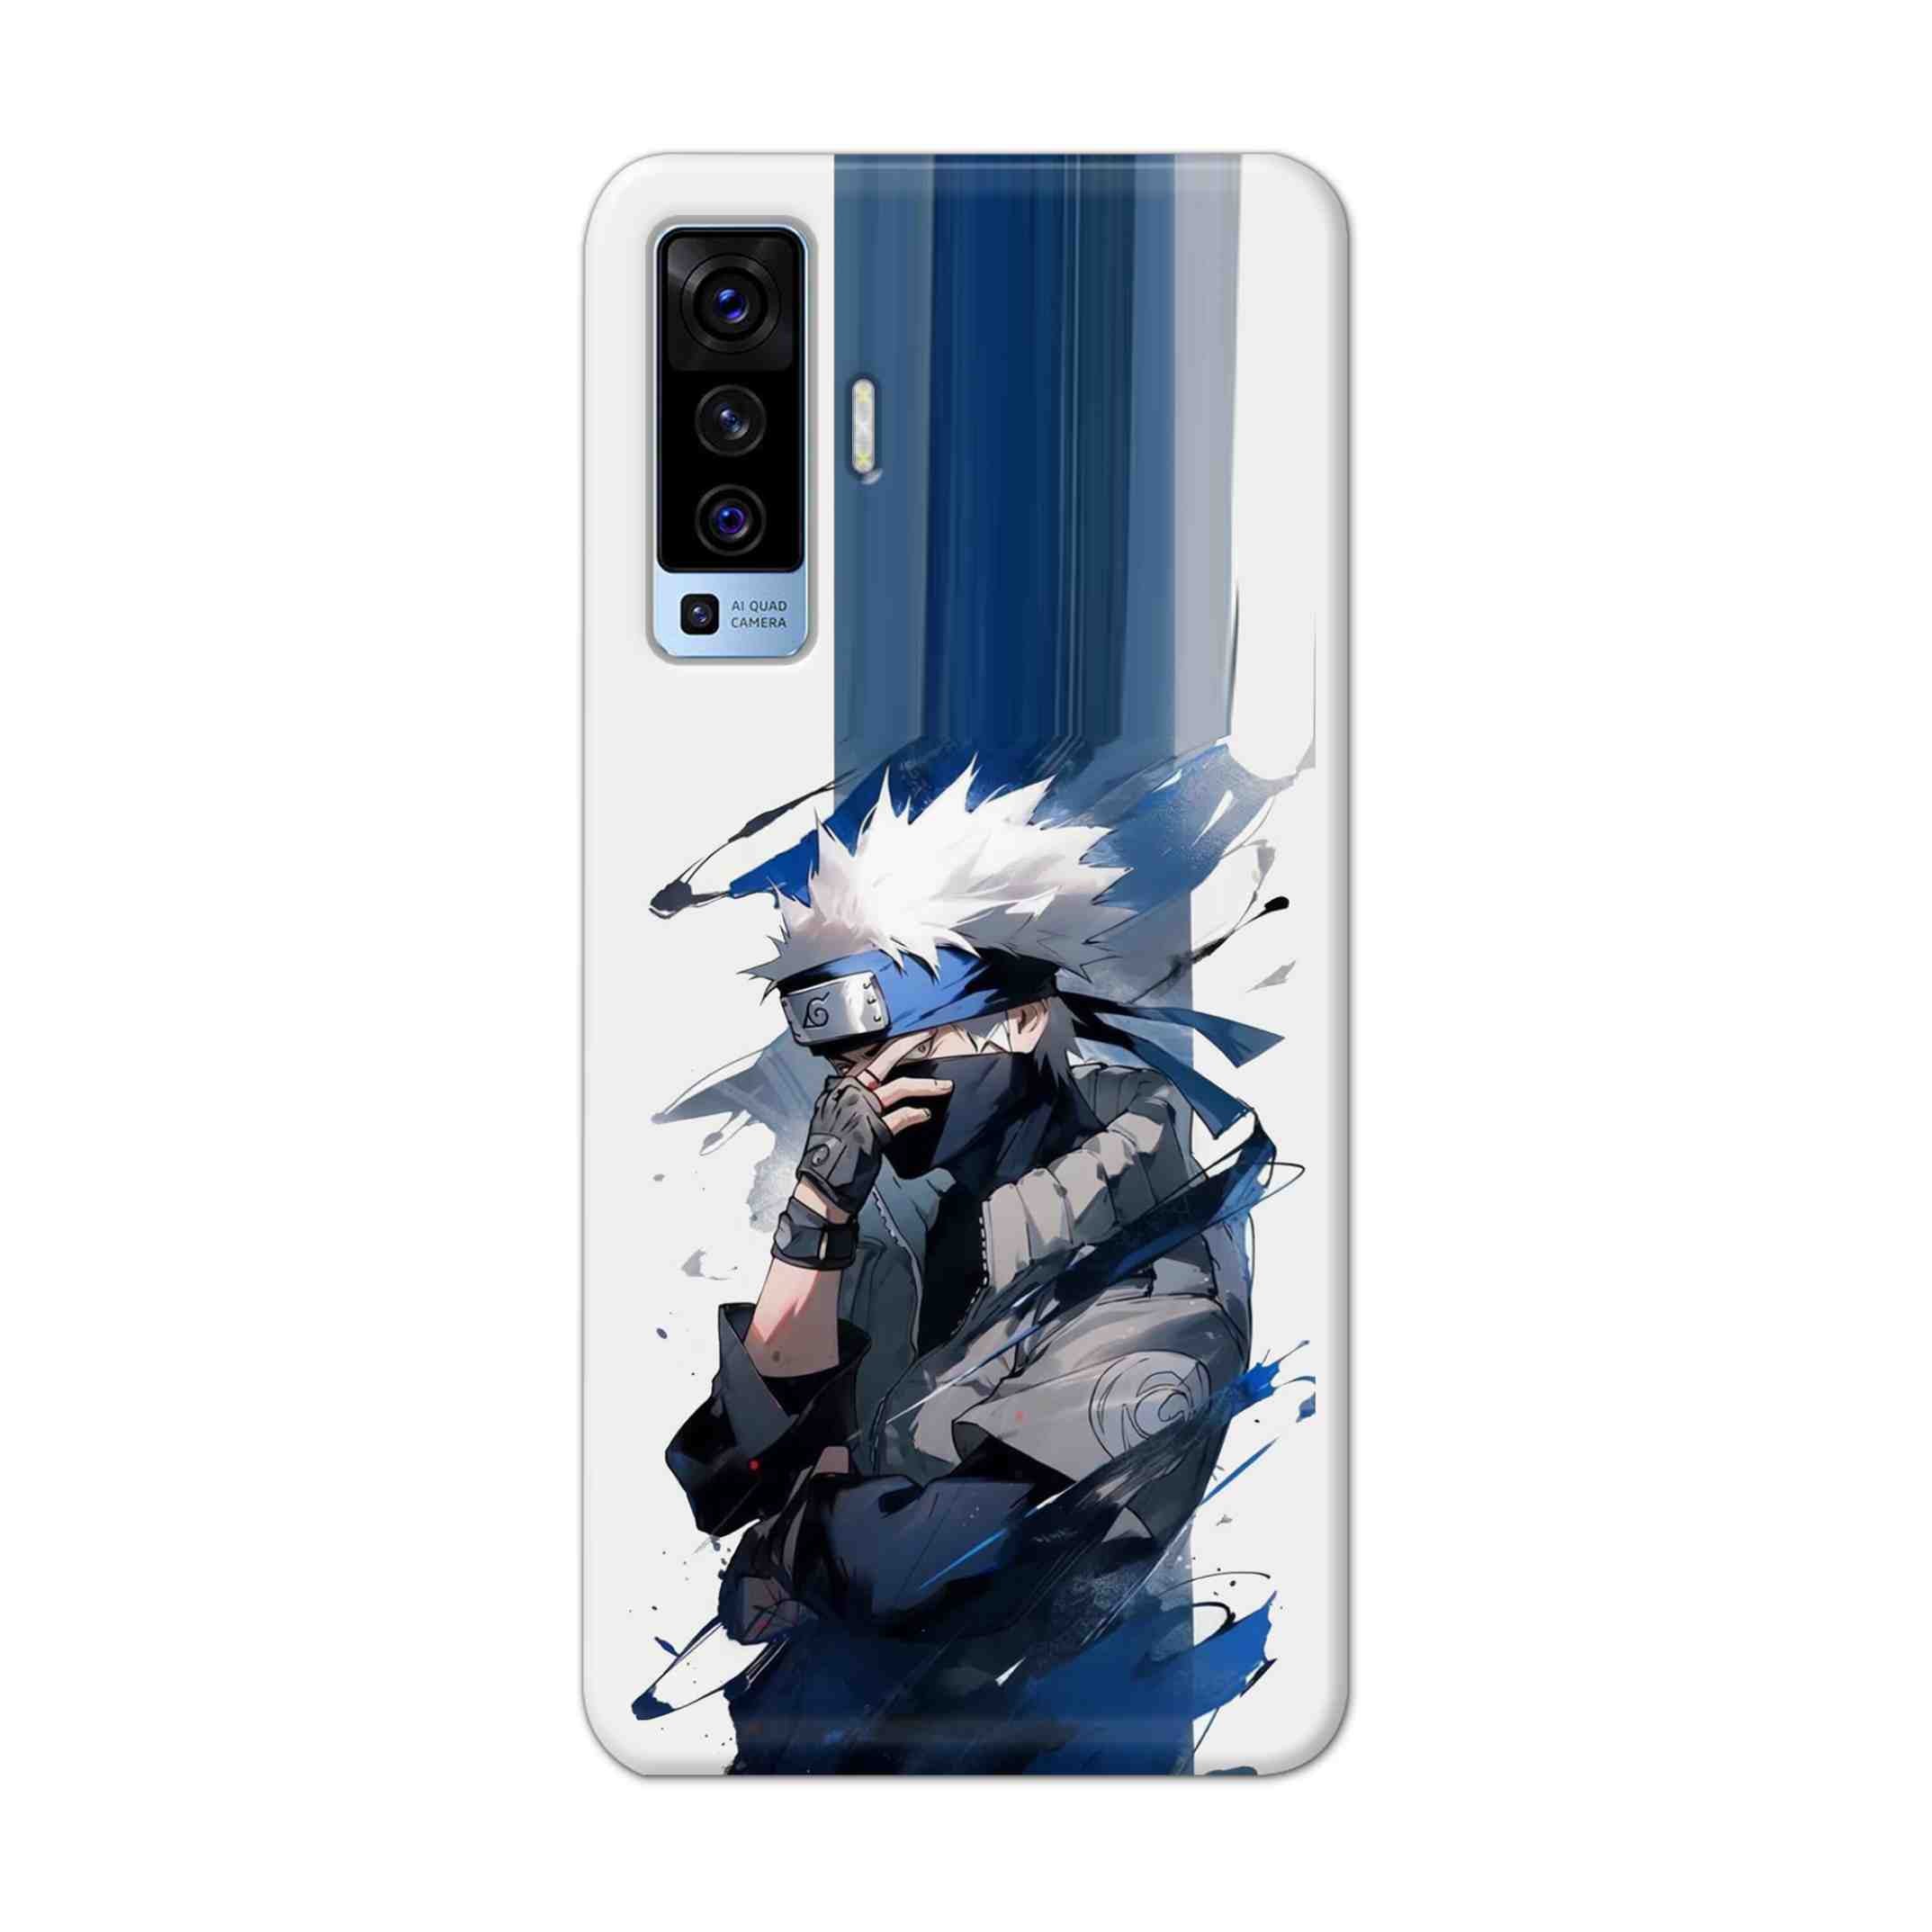 Buy Kakachi Hard Back Mobile Phone Case Cover For Vivo X50 Online